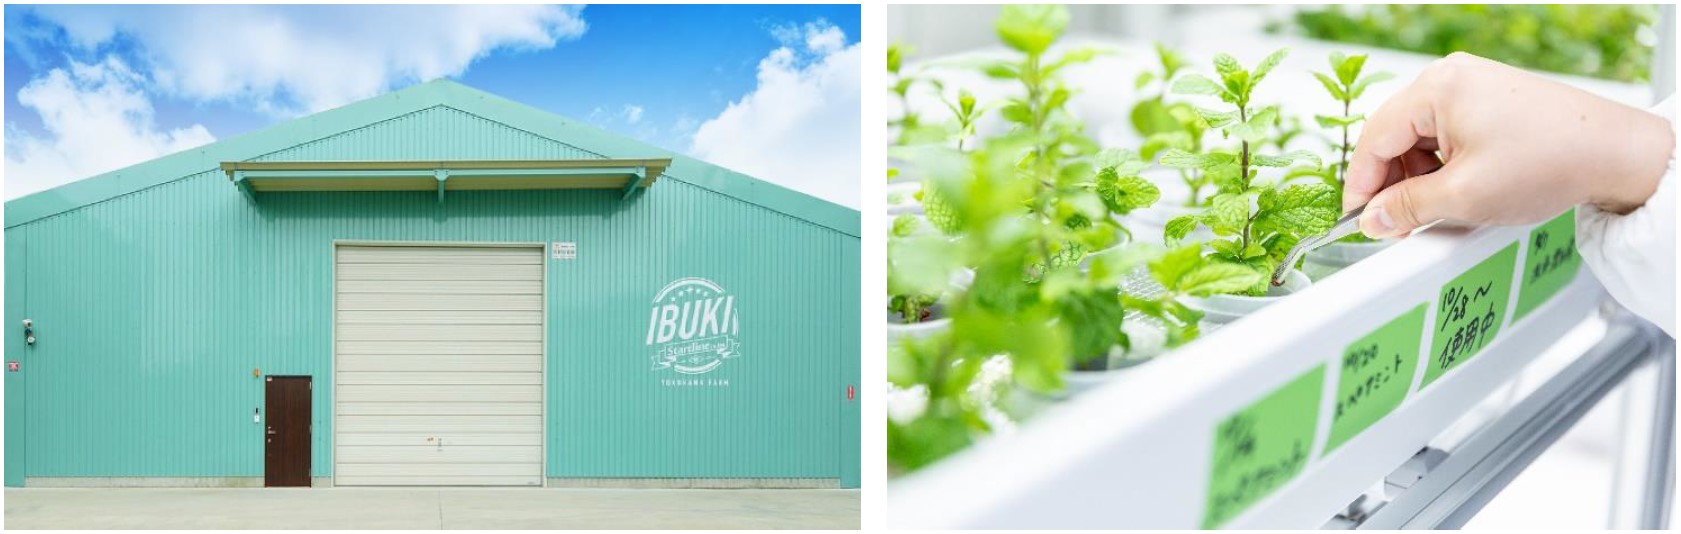 屋内農園型障がい者雇用支援サービス「IBUKI」、大阪府では４拠点目となる「IBUKI OSAKA KADOMA FARM」を10月1日開設のサブ画像1_（画像左）IBUKI外観イメージ：IBUKI YOKOHAMA FARM